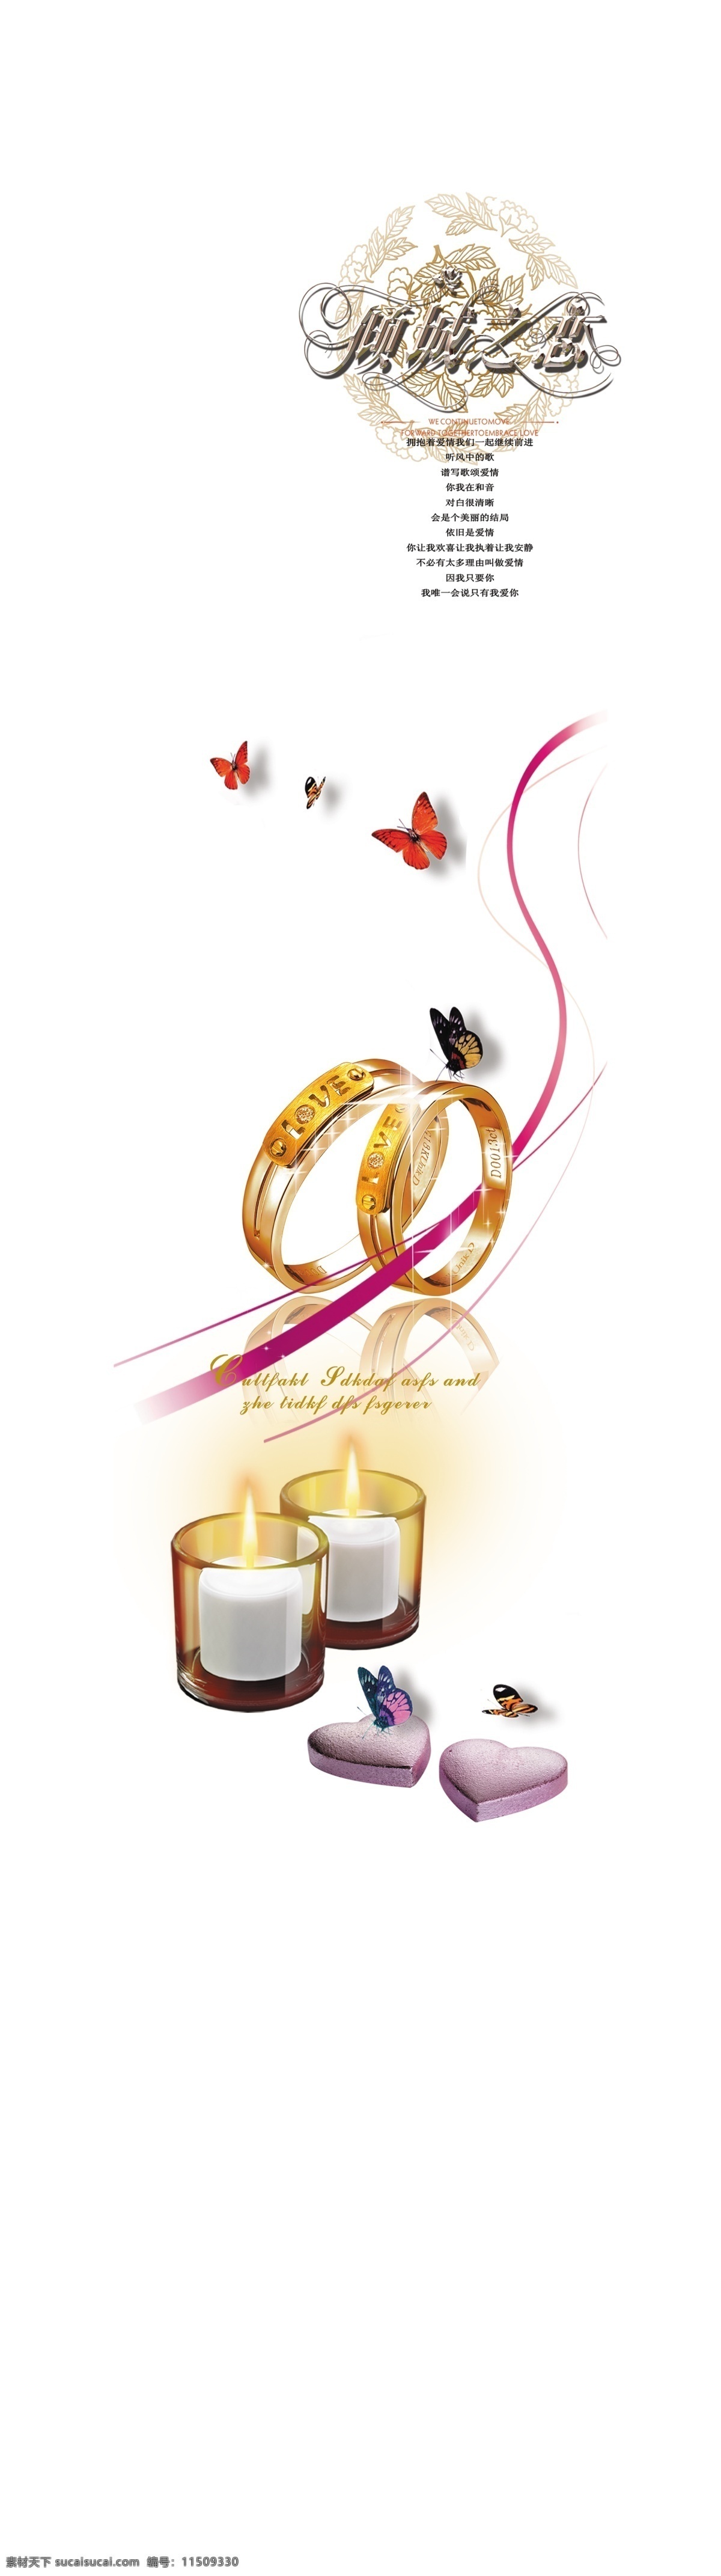 倾城之恋 戒指 蜡烛 丝带 蝴蝶 心形 玻璃 强化 平开门 移门图案 广告设计模板 源文件